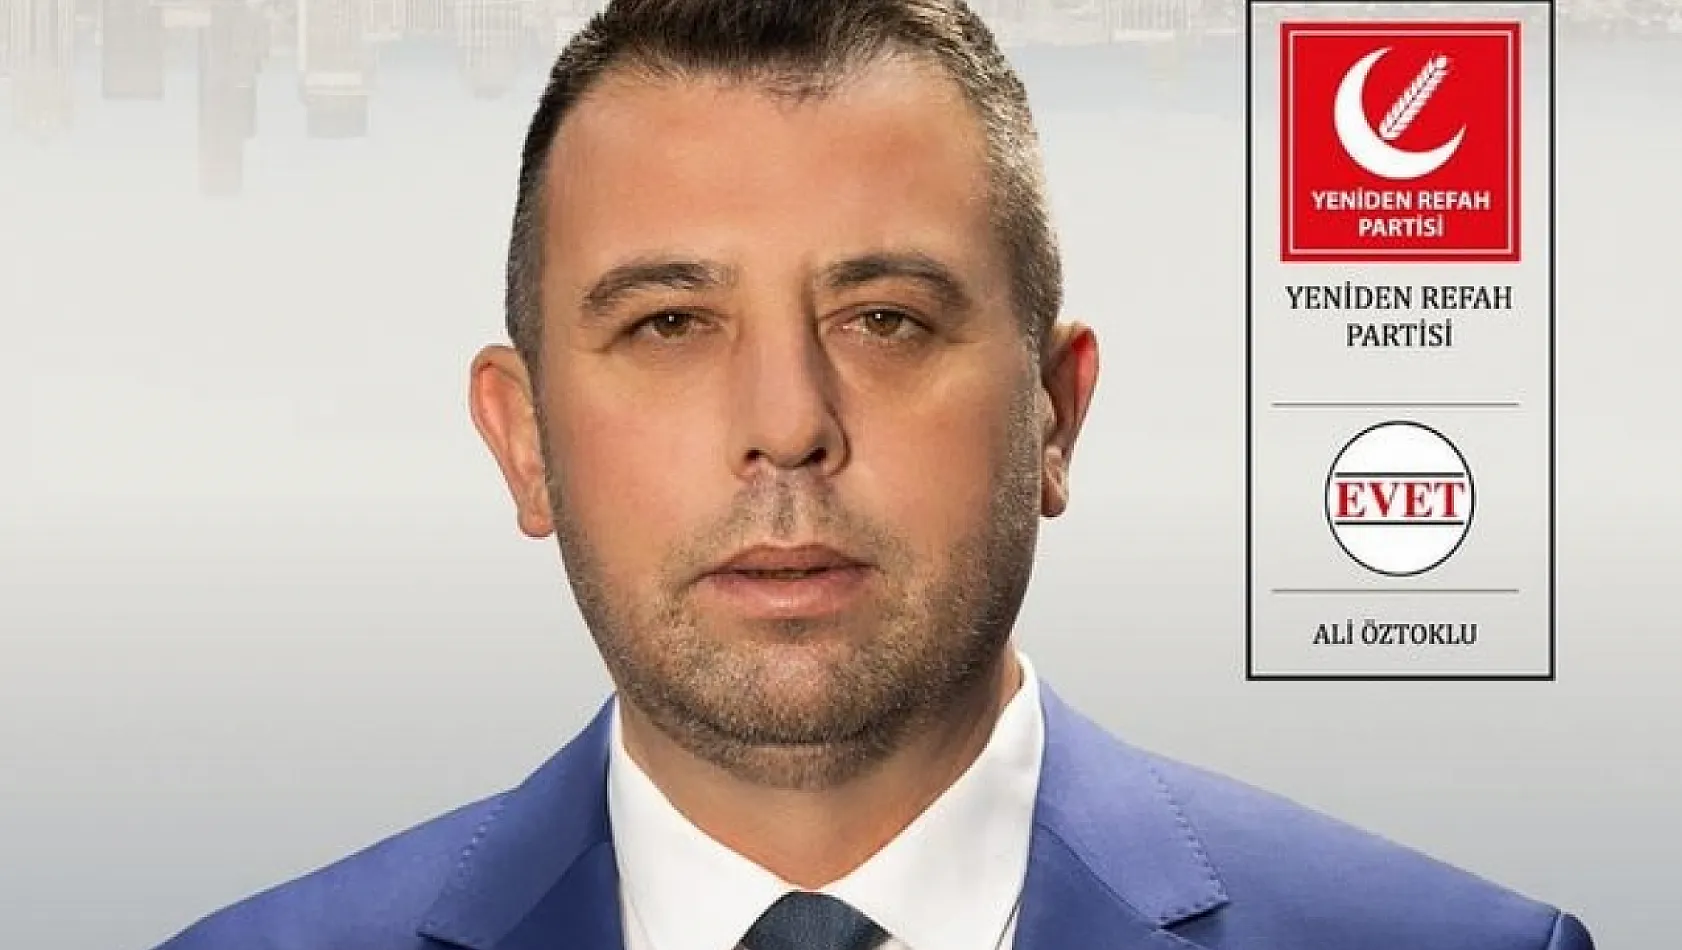 YRP'li Başkan 1 Ay Bile Olmadan Partisinden İstifa Edip AK Parti'ye Geçiyor